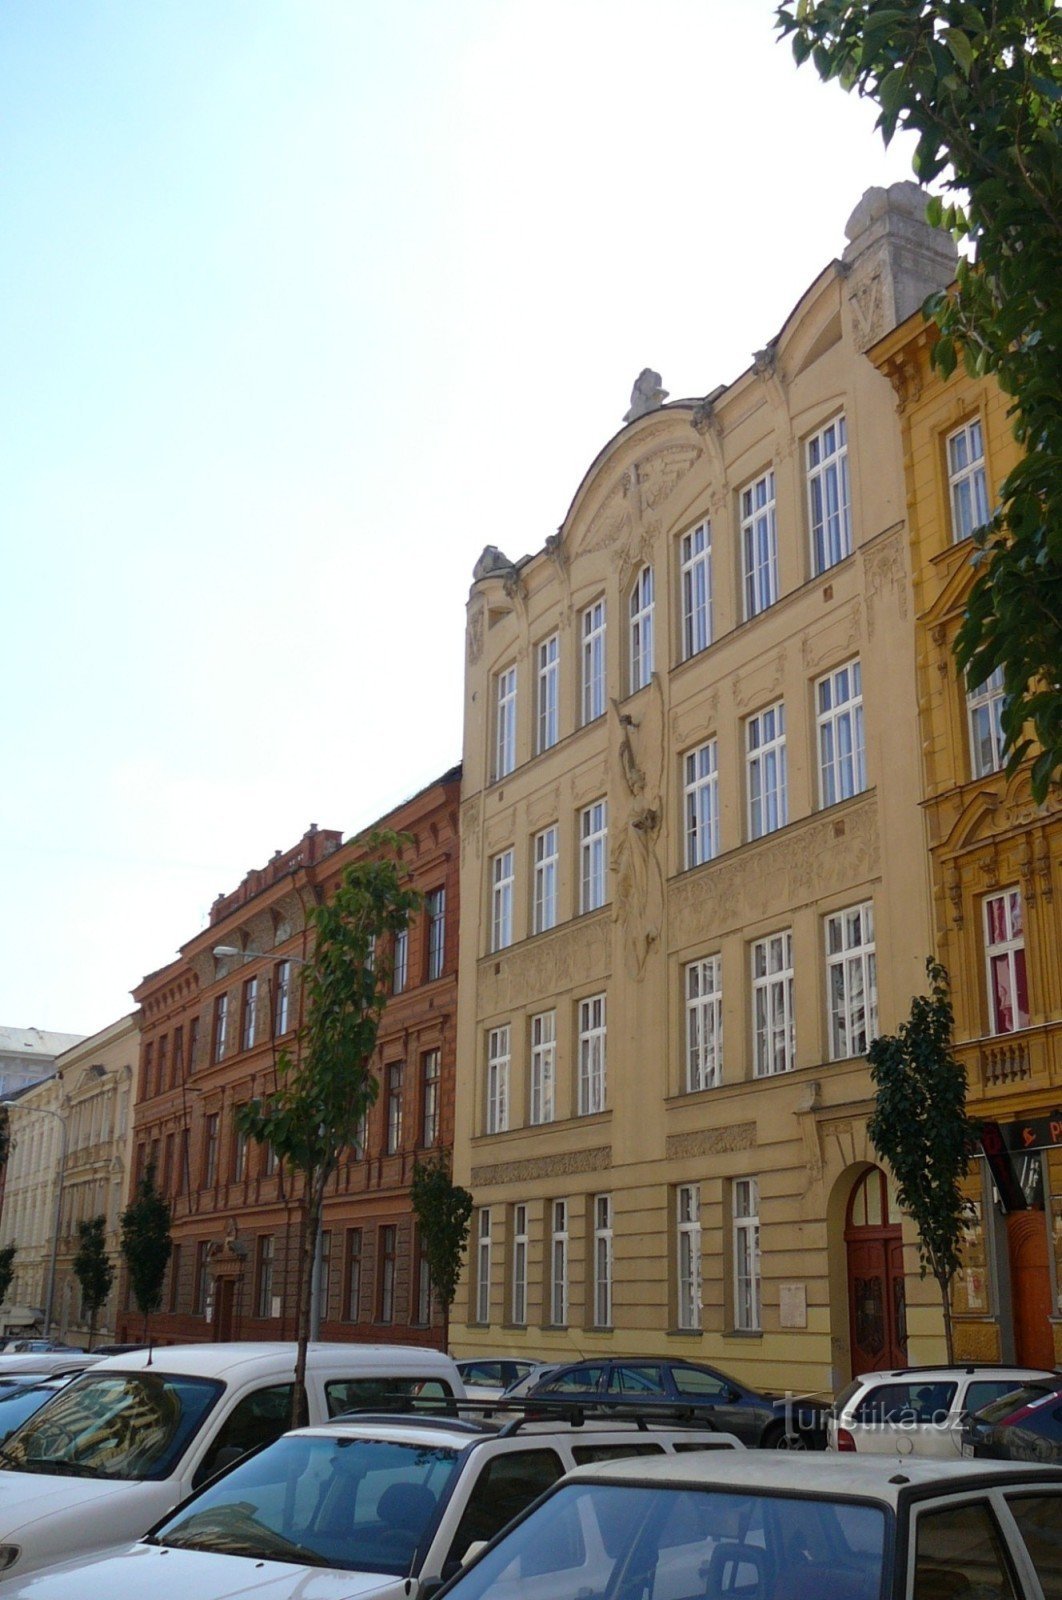 Oba domy przy ulicy Jaselskiej, gdzie Jurkovič zaprojektował część wnętrz